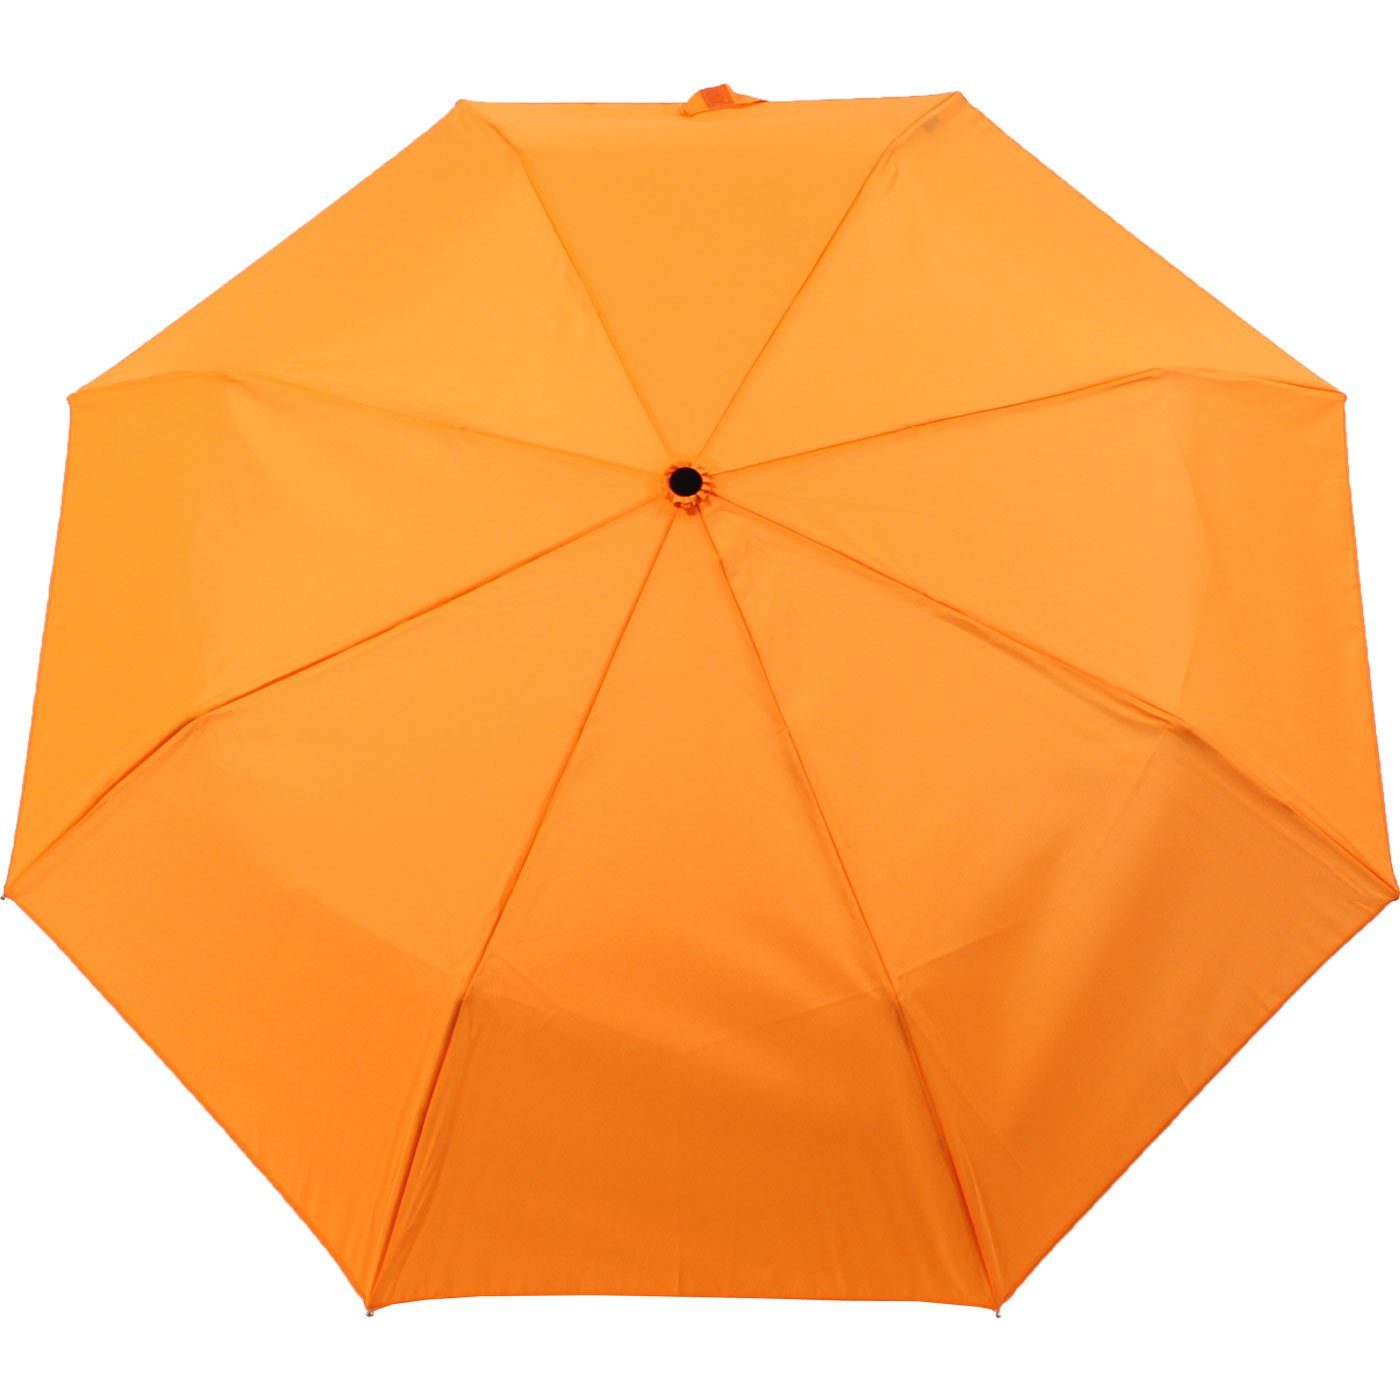 mit - Mini Ultra Taschenregenschirm extra leicht, großem Light - Dach iX-brella neon-orange farbenfroh